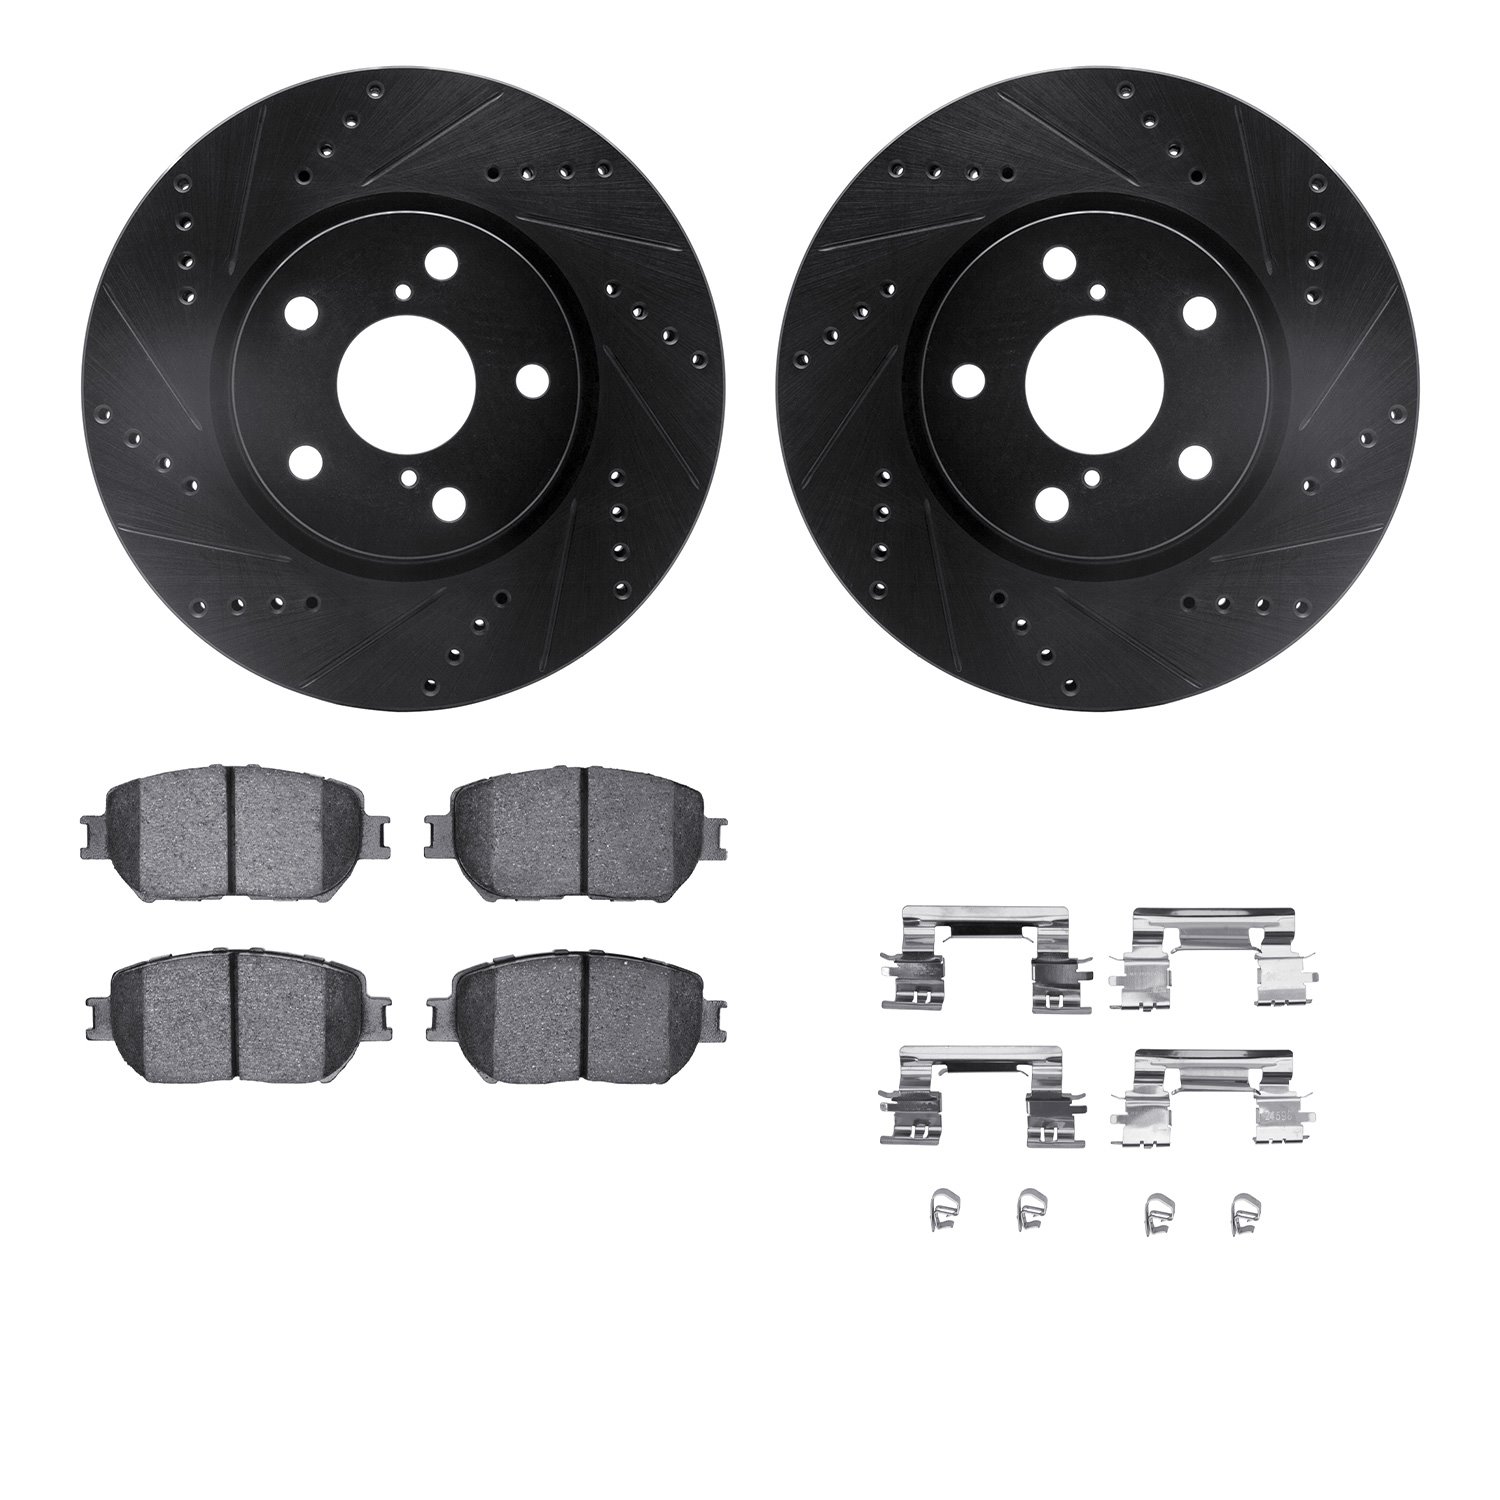 8312-75015 Drilled/Slotted Brake Rotors with 3000-Series Ceramic Brake Pads Kit & Hardware [Black], 2006-2015 Lexus/Toyota/Scion